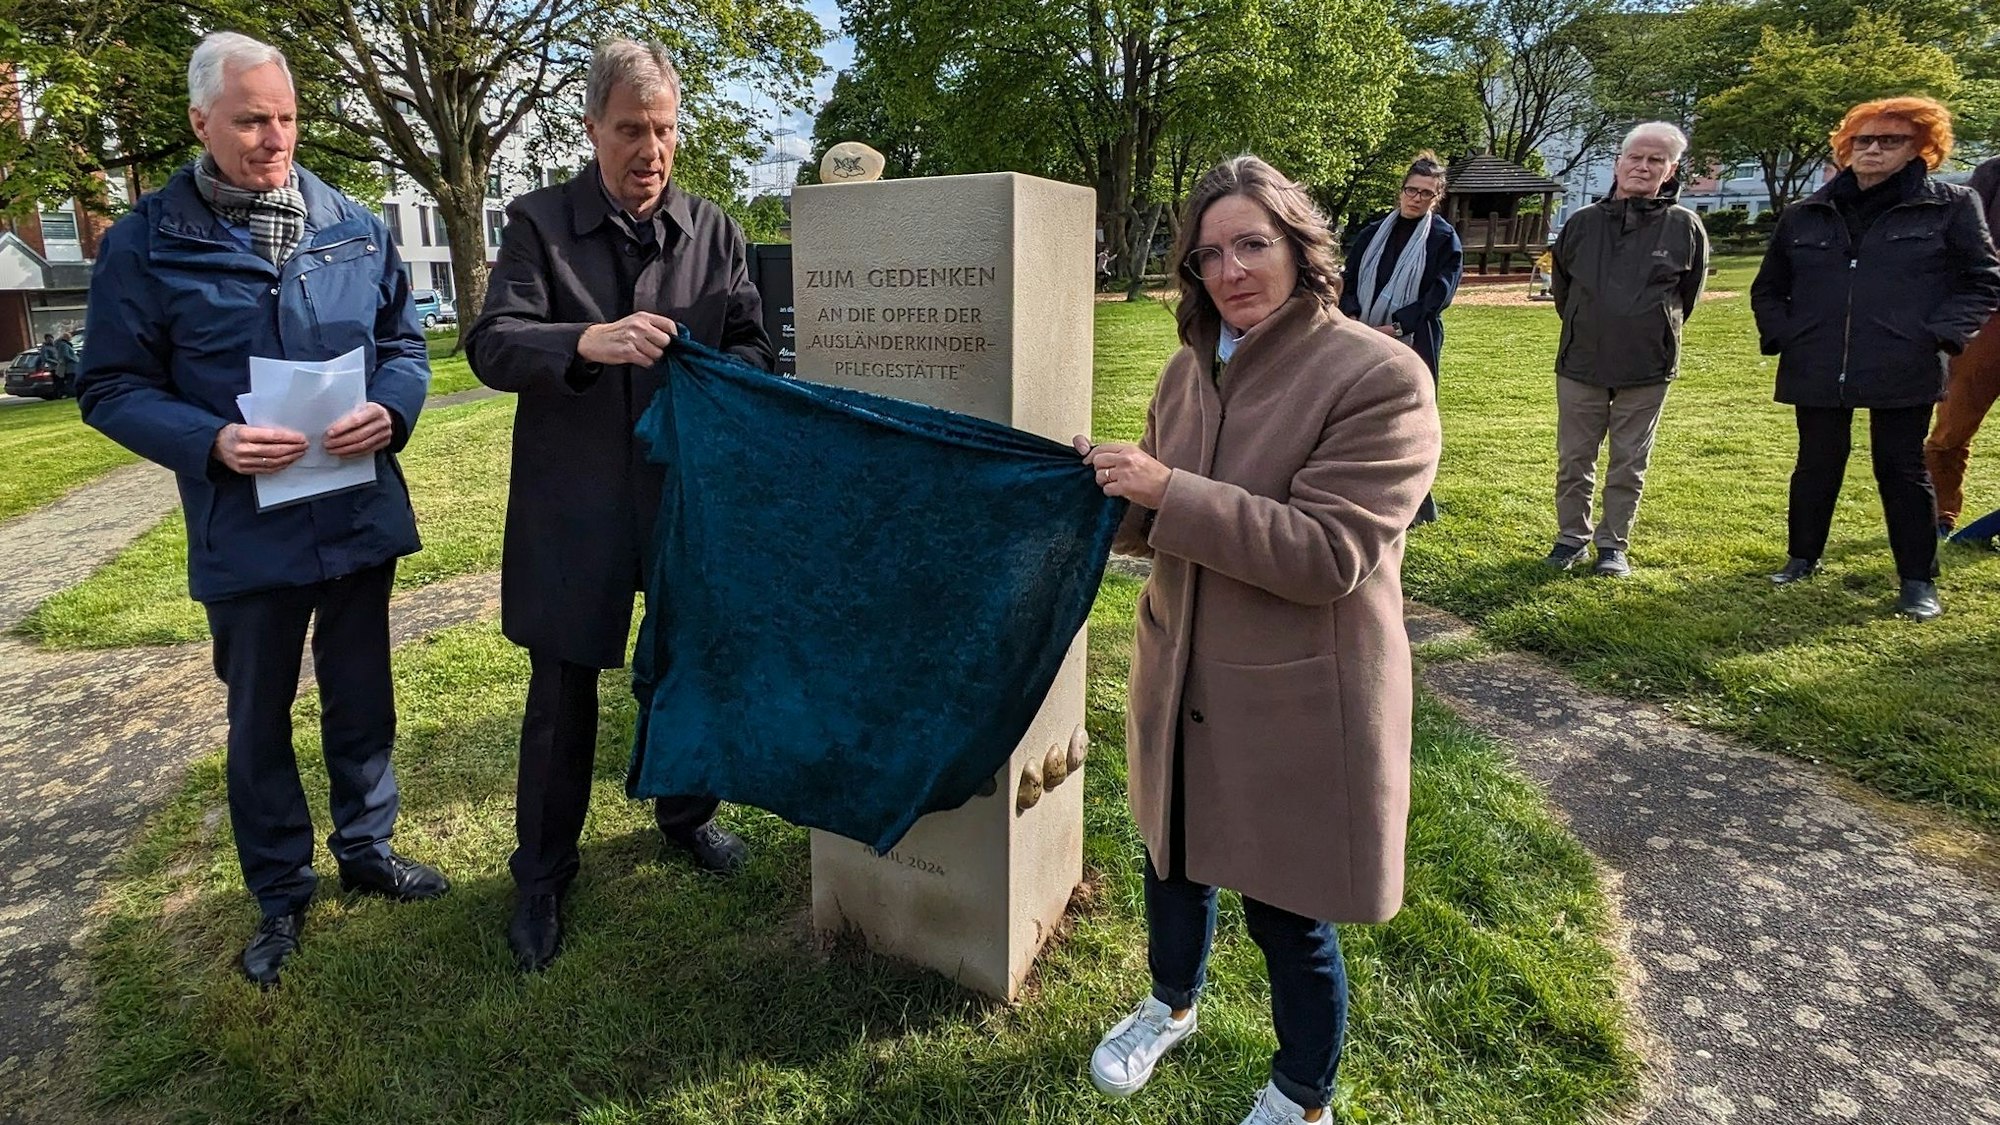 Die Gedenkstätte für die Opfer der sogenannten "Ausländerkinder-Pflegestätte" in Alfter wurde offiziell vor dem Rathaus enthüllt durch Thomas Klaus (2. von links) und Jeanette Schroerlücke (vorne rechts).